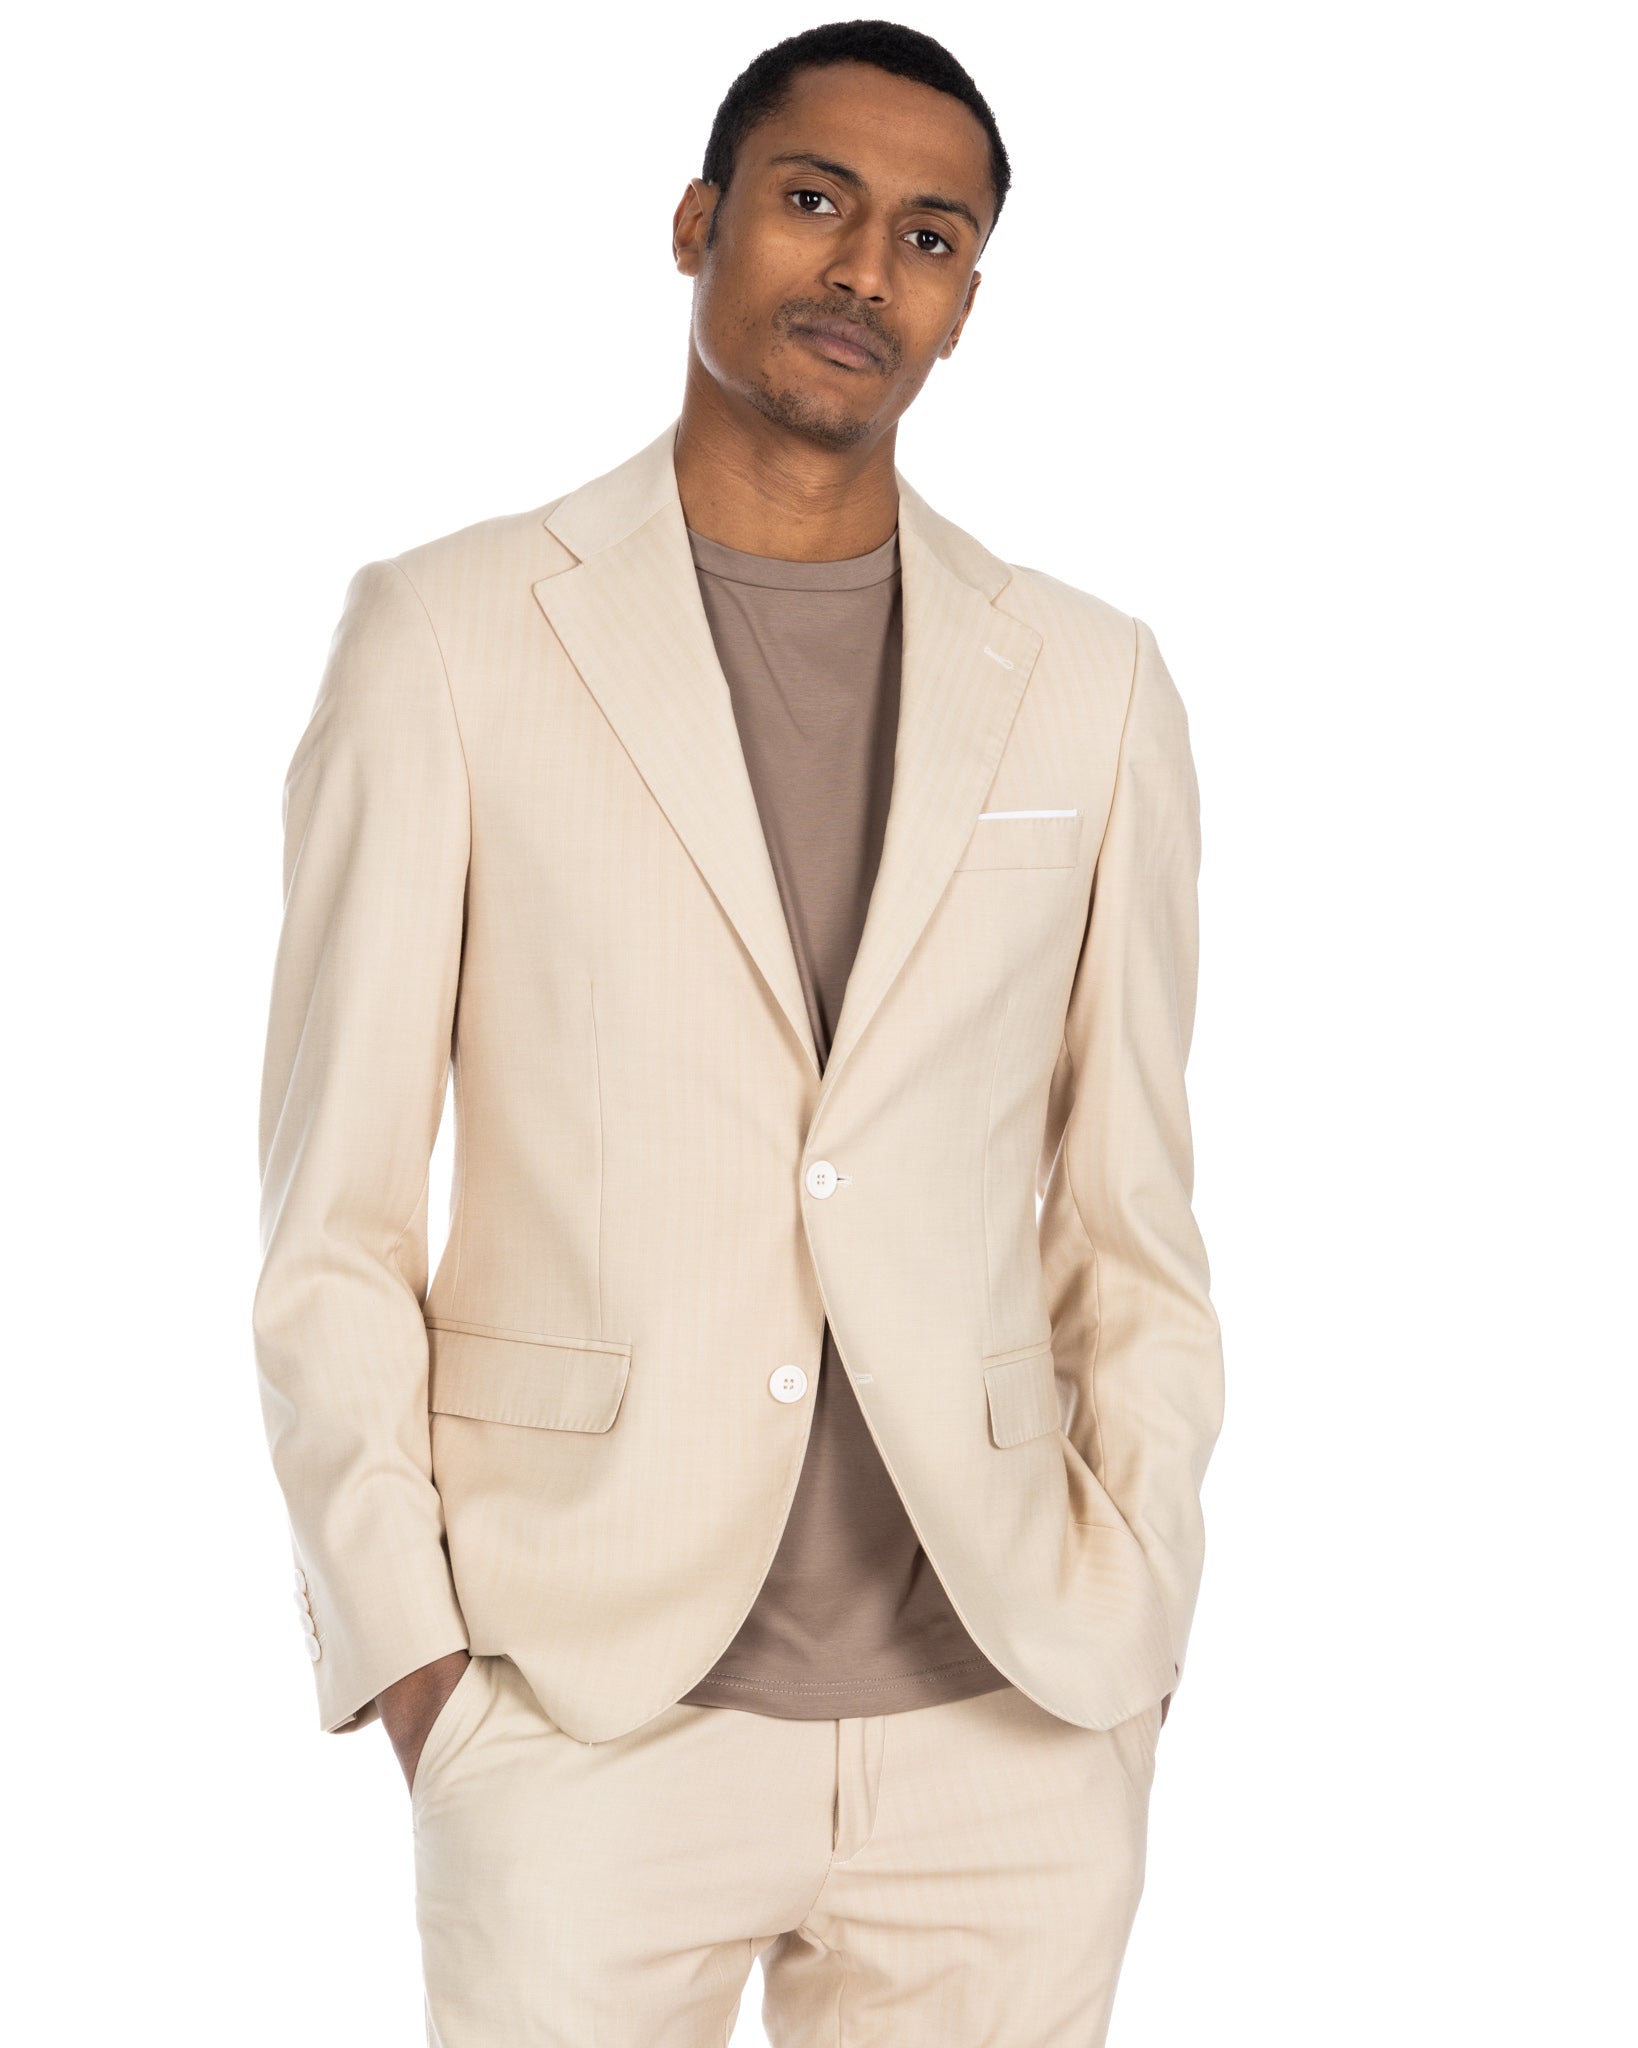 Paris - beige solaro single-breasted suit